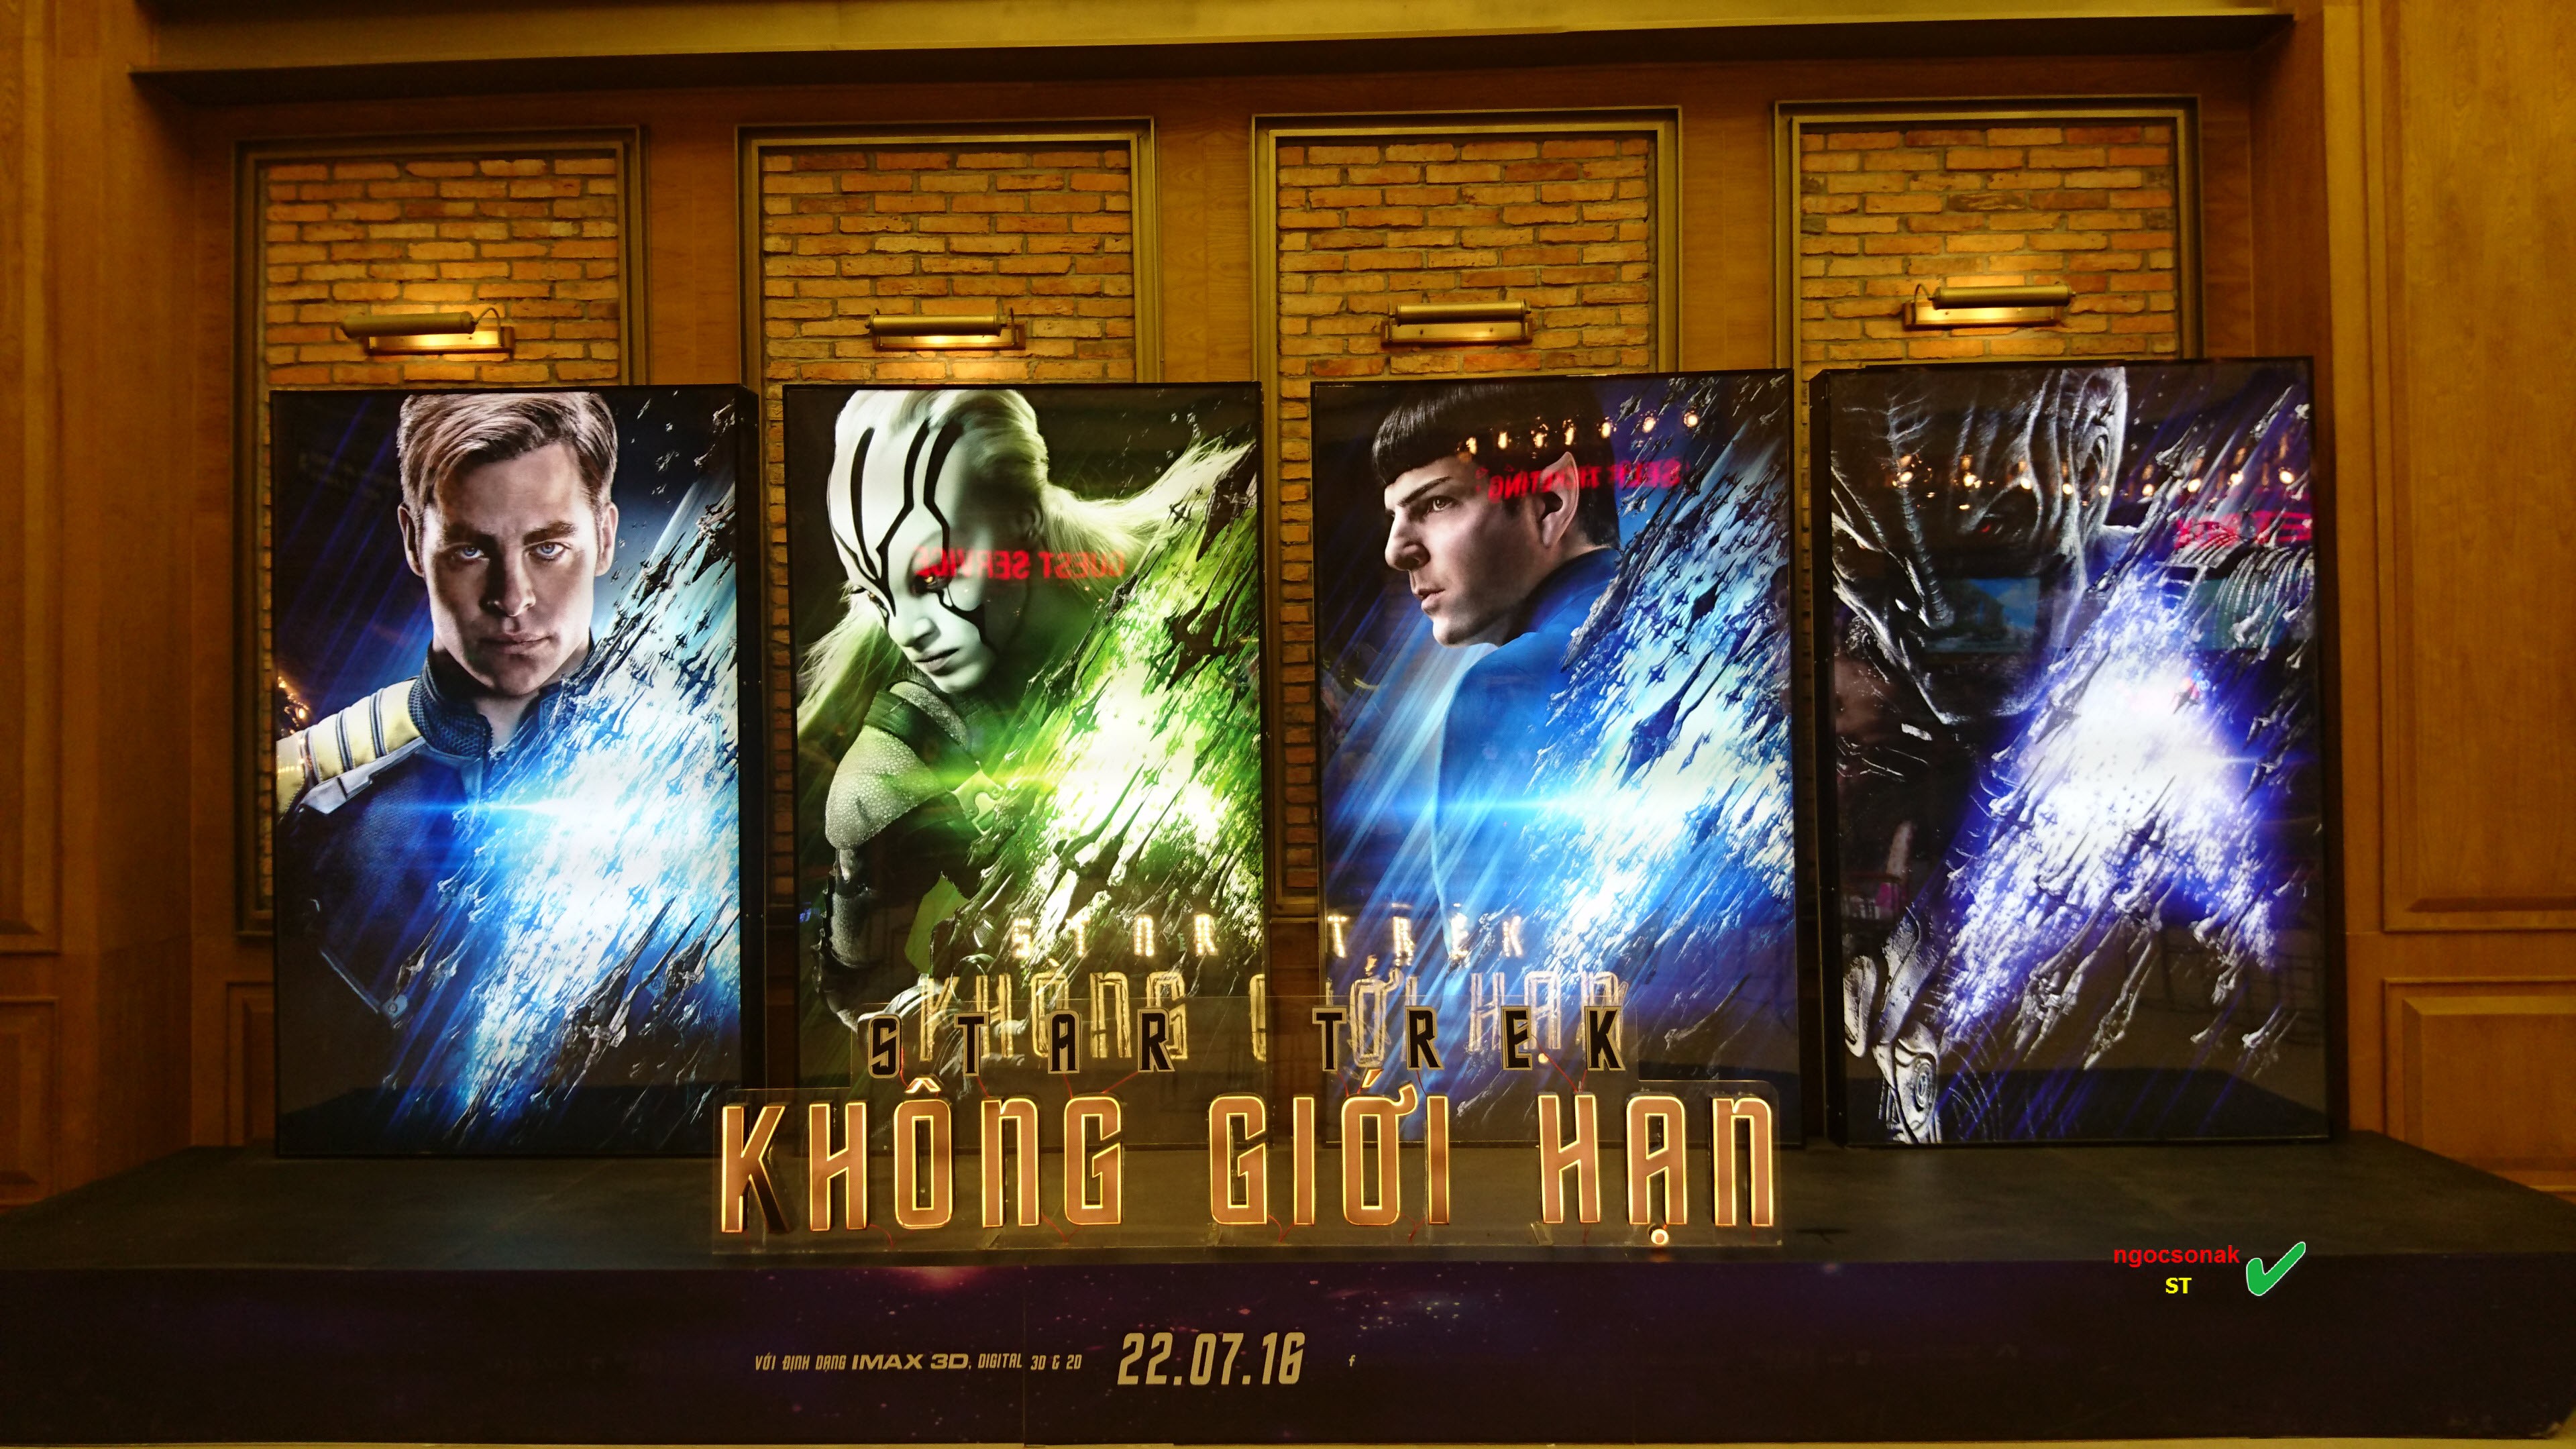 CGV-Hoang-Van-Thu (7)